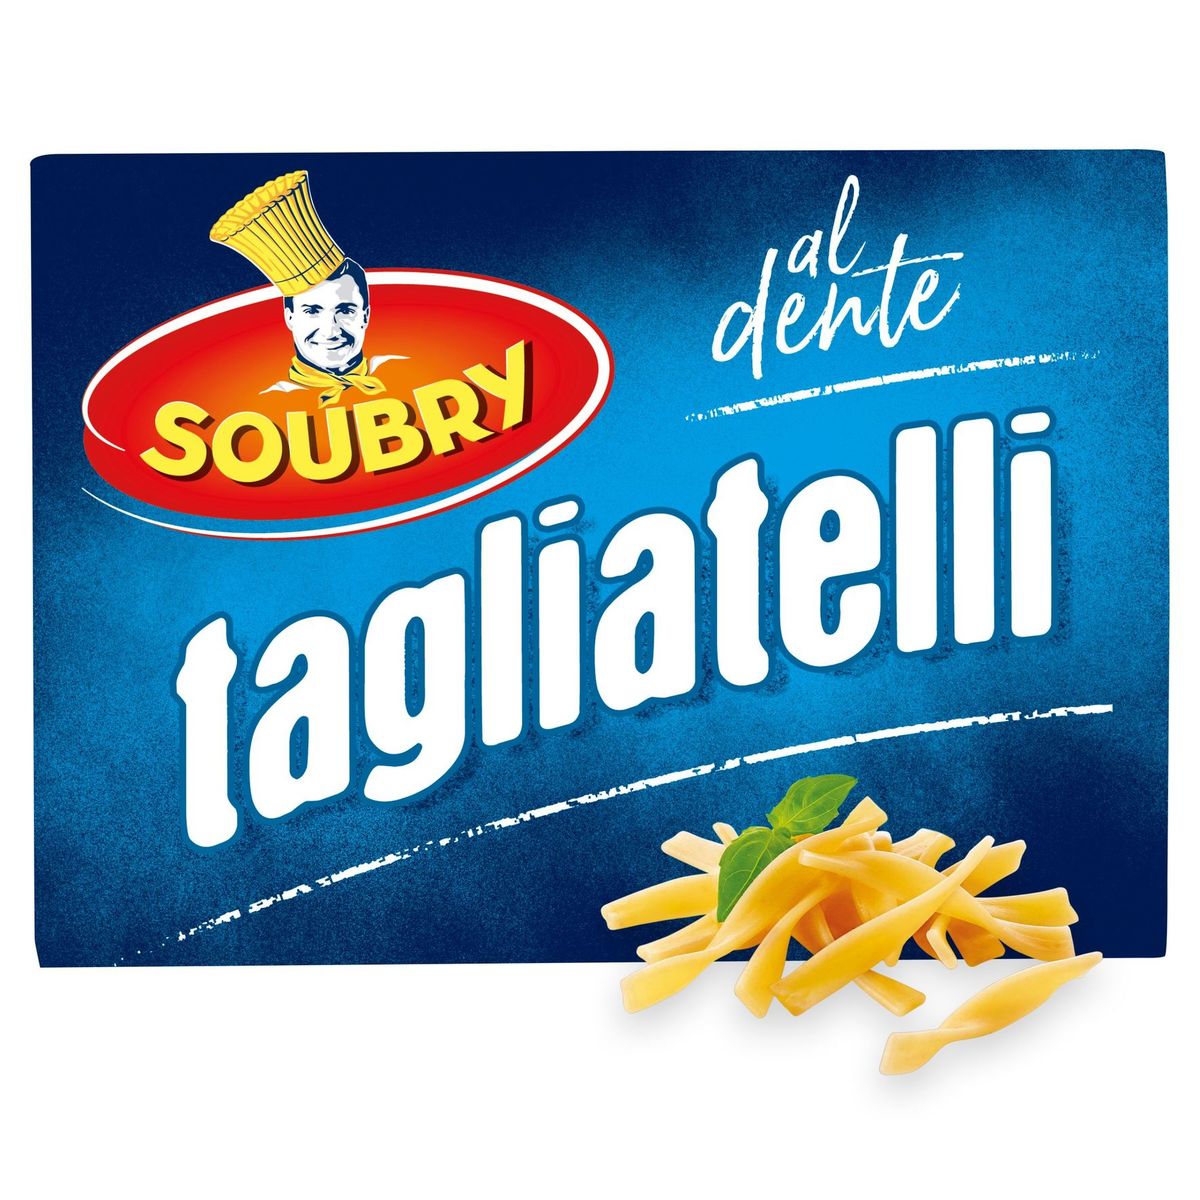 Soubry Pâtes Tagliatelli 375g